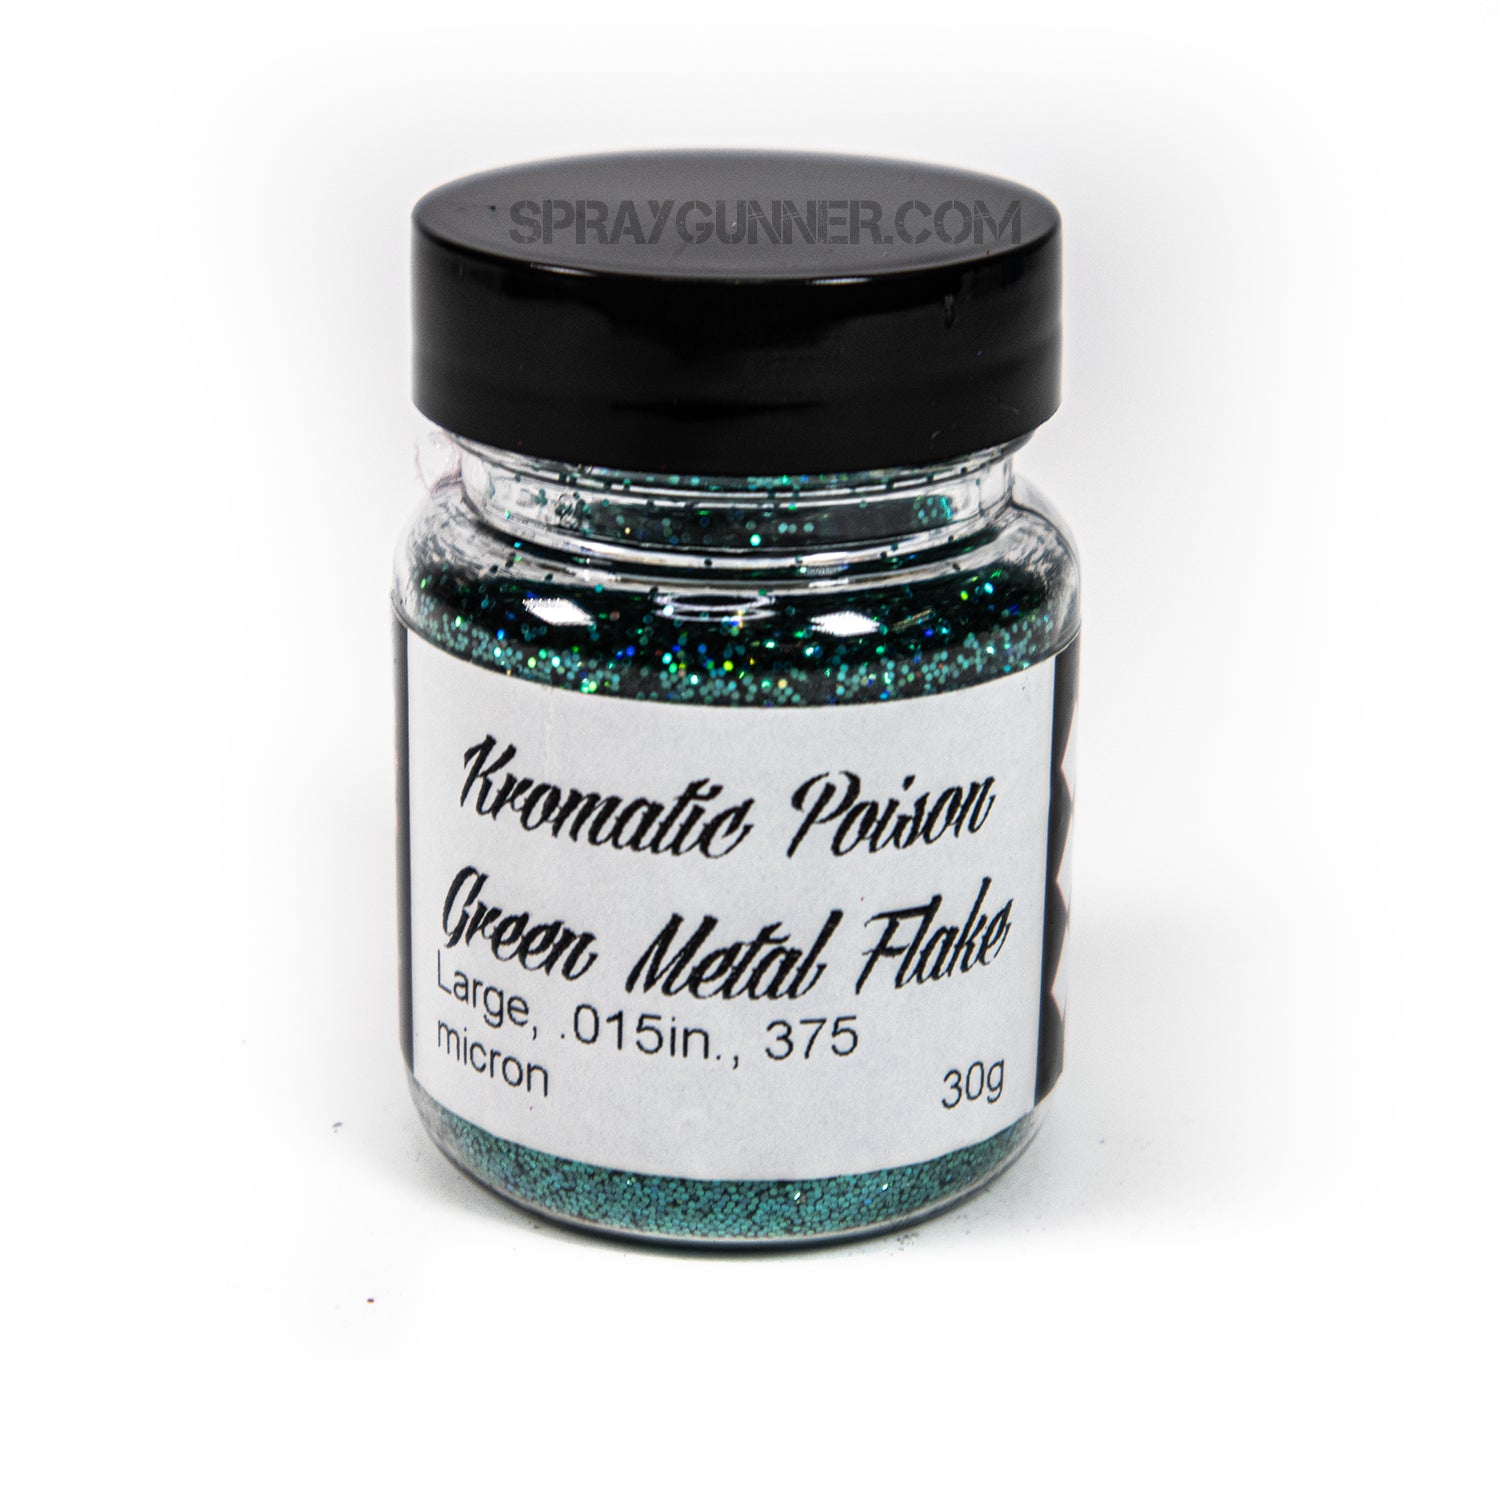 Flake King: Kromatic Poison Green Metal Flake Flake King